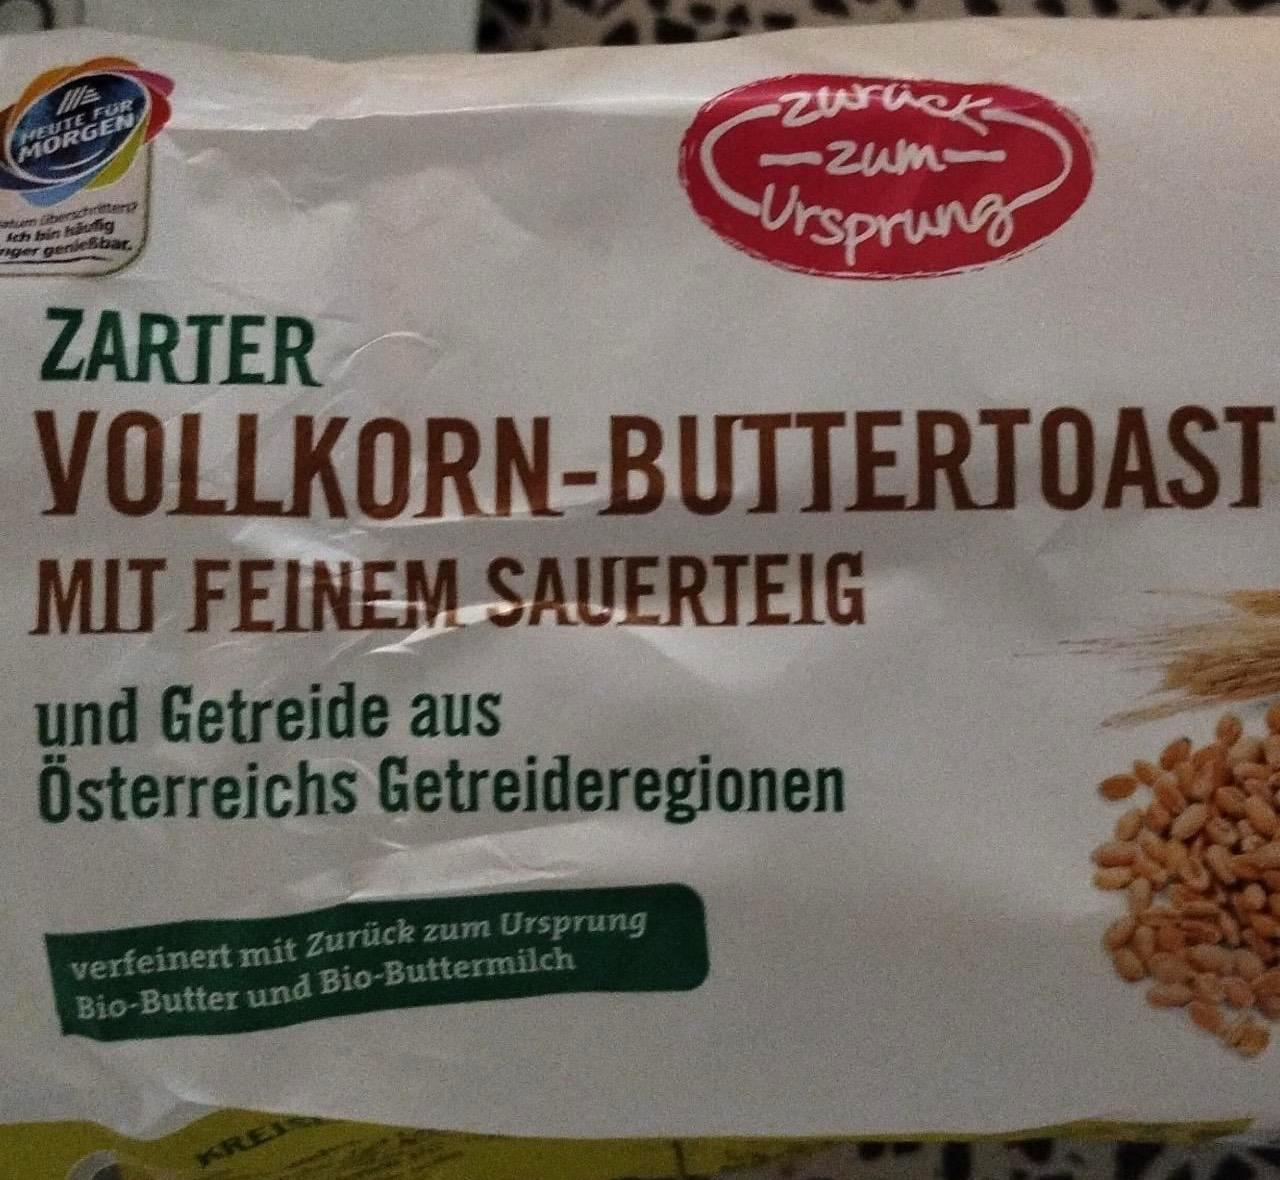 Képek - Vollkorn buttertoast mit feinem sauerteig Zuruck zum ursprung